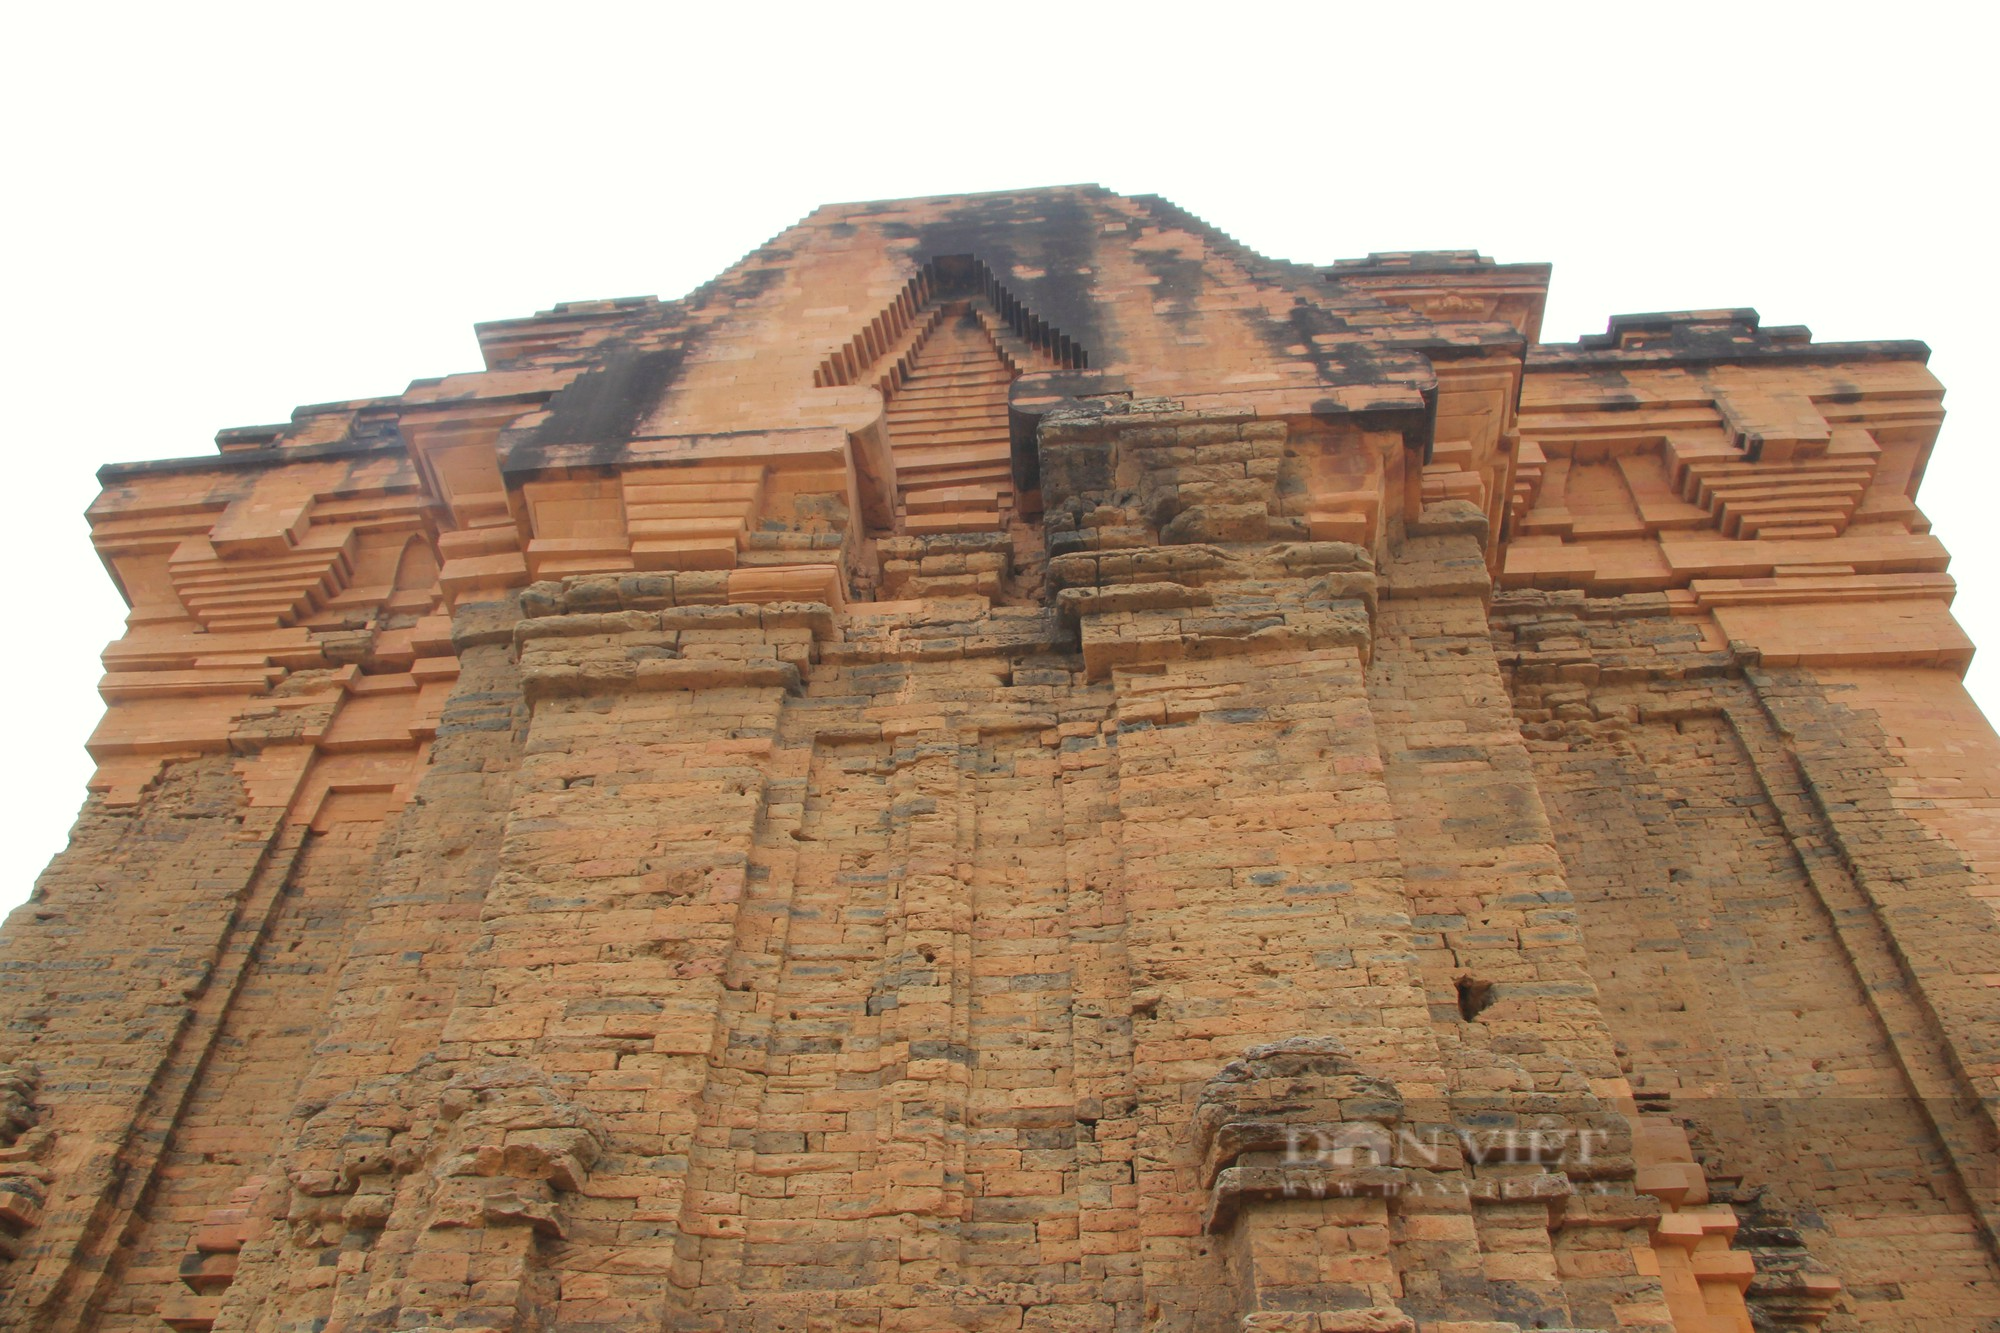 Bí ẩn tháp Chăm cổ “bị bỏ rơi” lại là nơi lưu giữ bảo vật Quốc gia có một không hai ở Ninh Thuận - Ảnh 5.